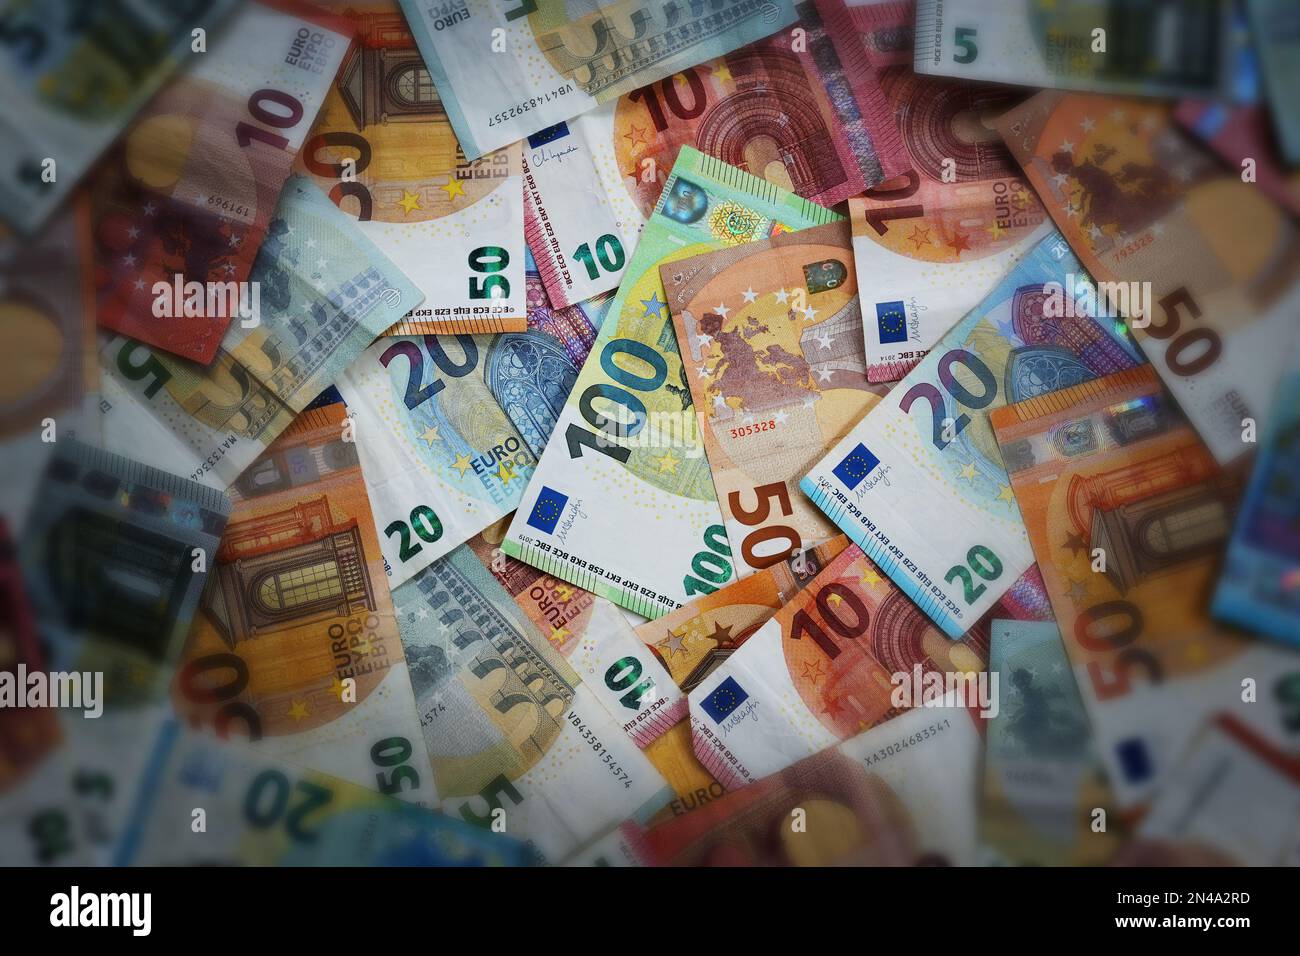 Viele verschiedene Euro-Banknoten, beleuchteter Fokus auf den Hundert-Euro-Schein in der Mitte, dunkel und verschwommen an den Rändern, Konzept für Finanzen, Wirtschaft Stockfoto